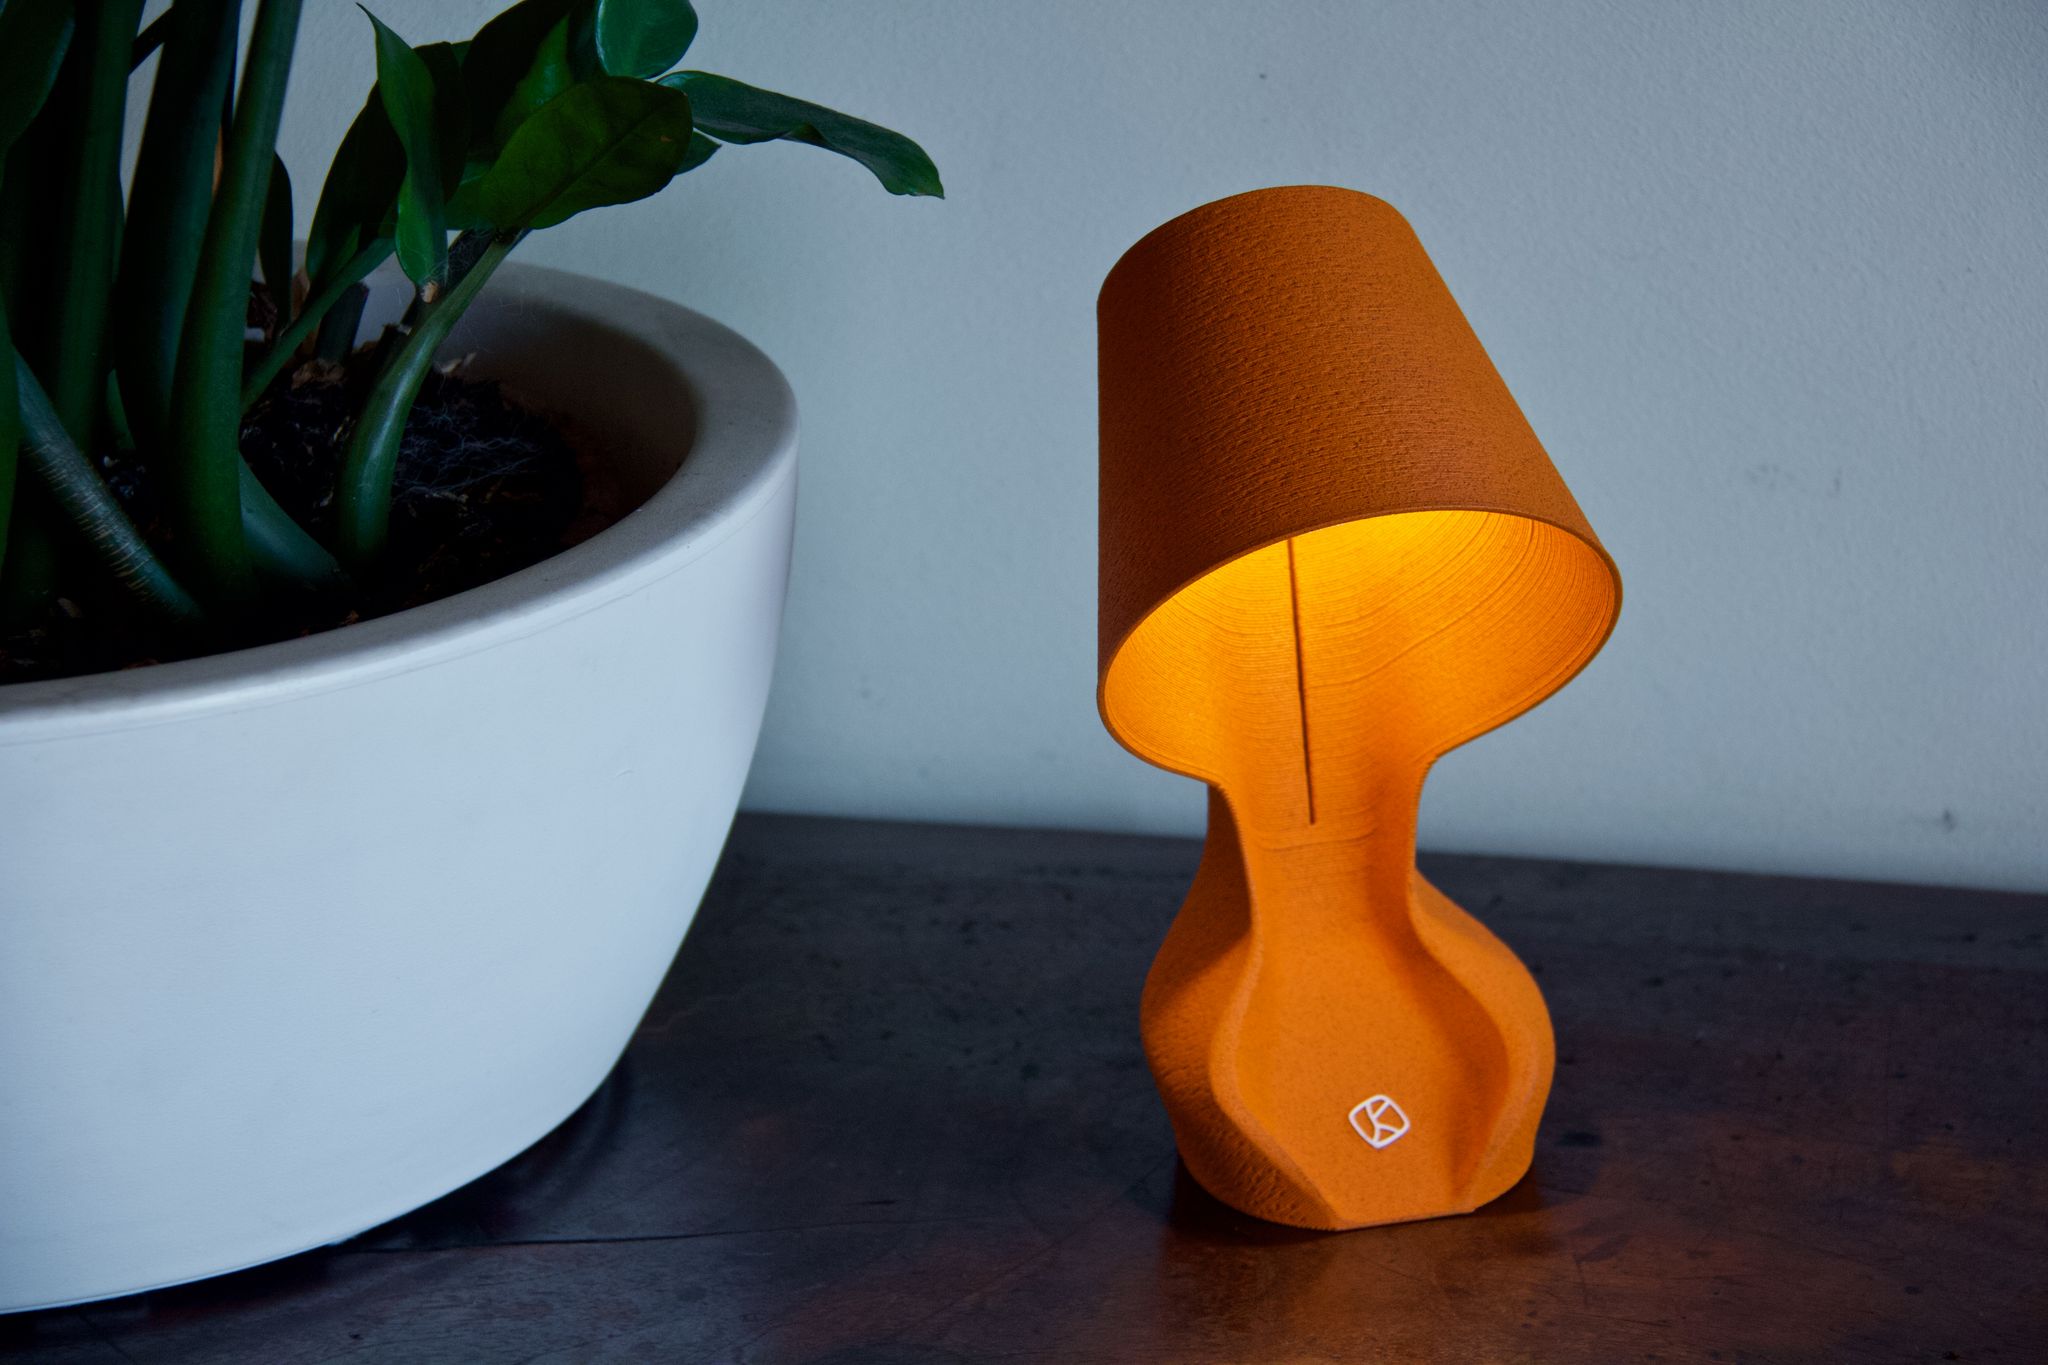 オレンジの皮の新素材で作ったテーブルランプ、イタリアのデザイン会社がMakuakeで販売